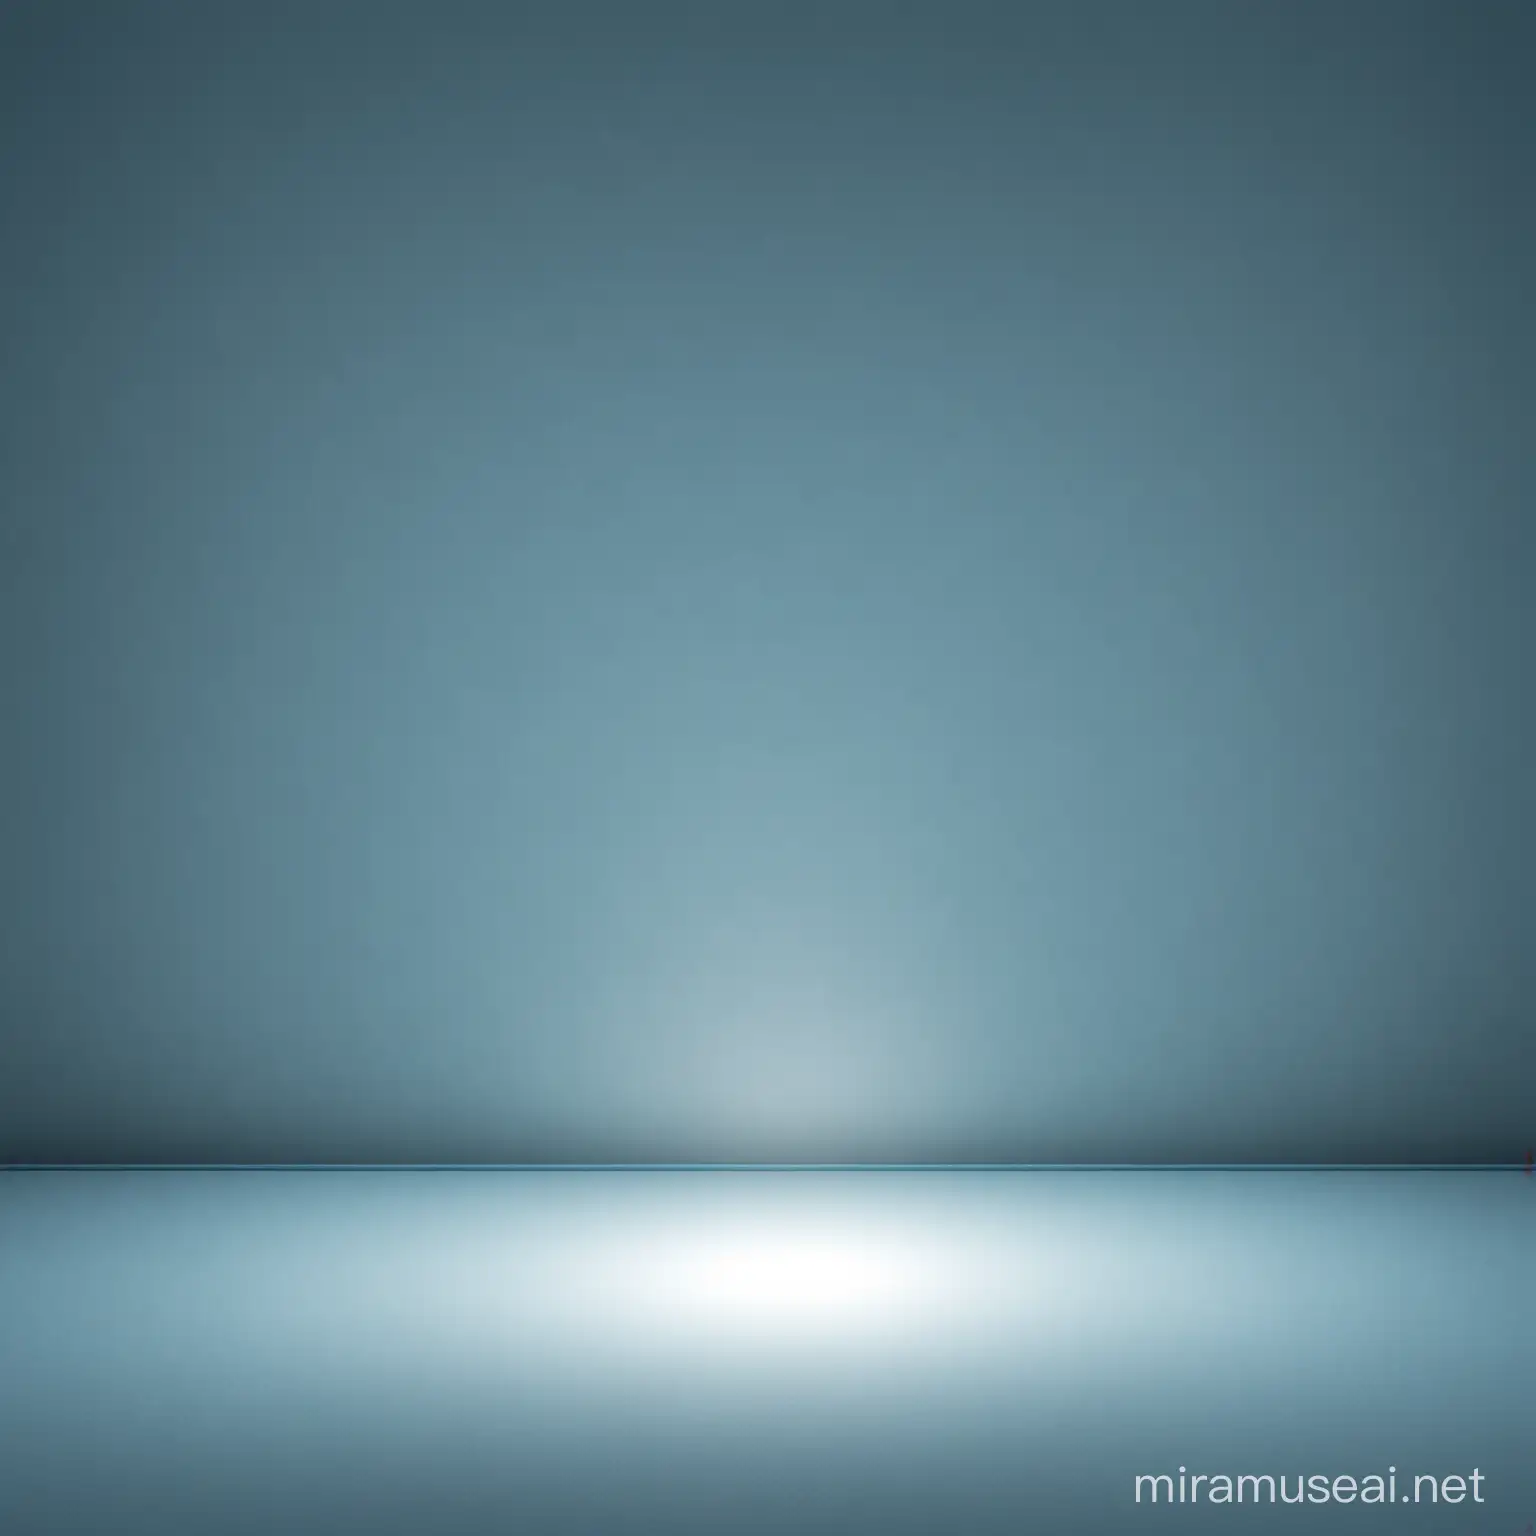 illuminated light blue background